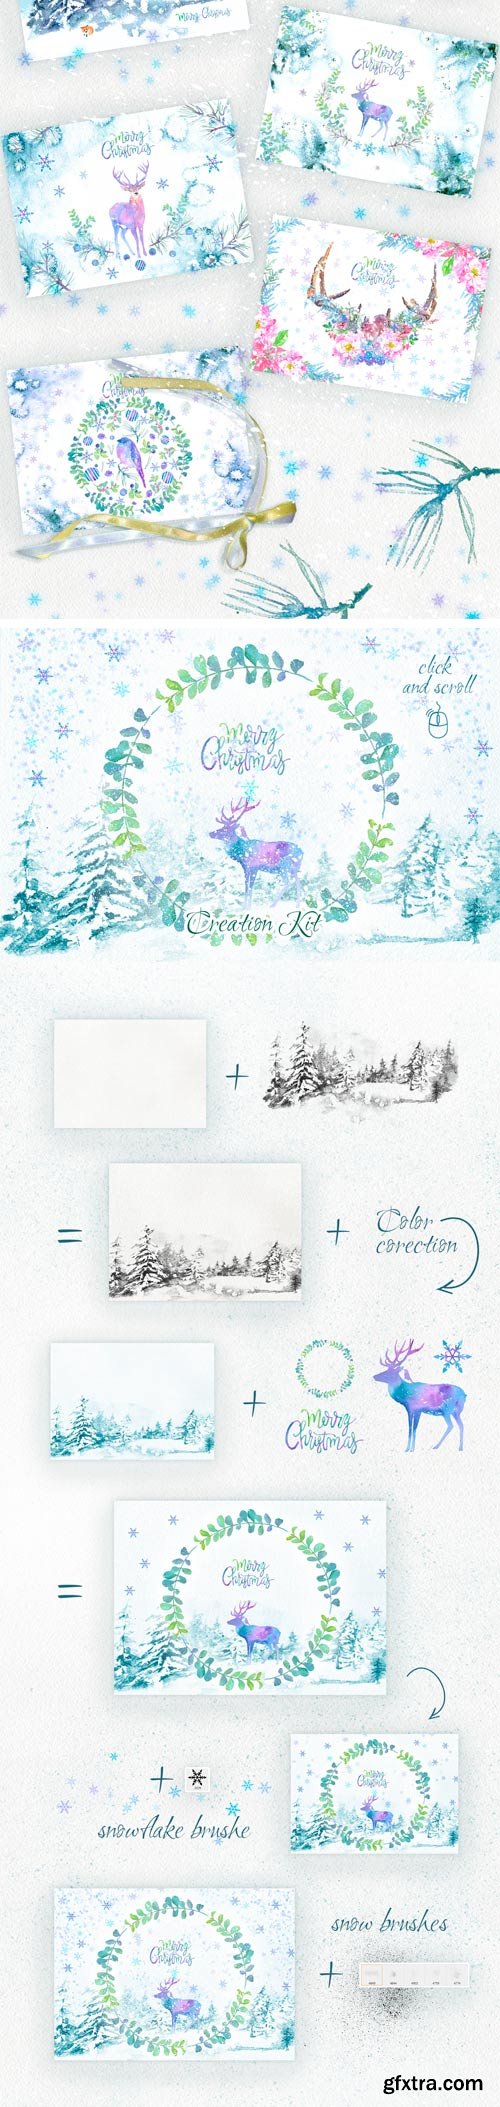 CM - Merry Christmas Graphic Set. +10 PSD 2039129